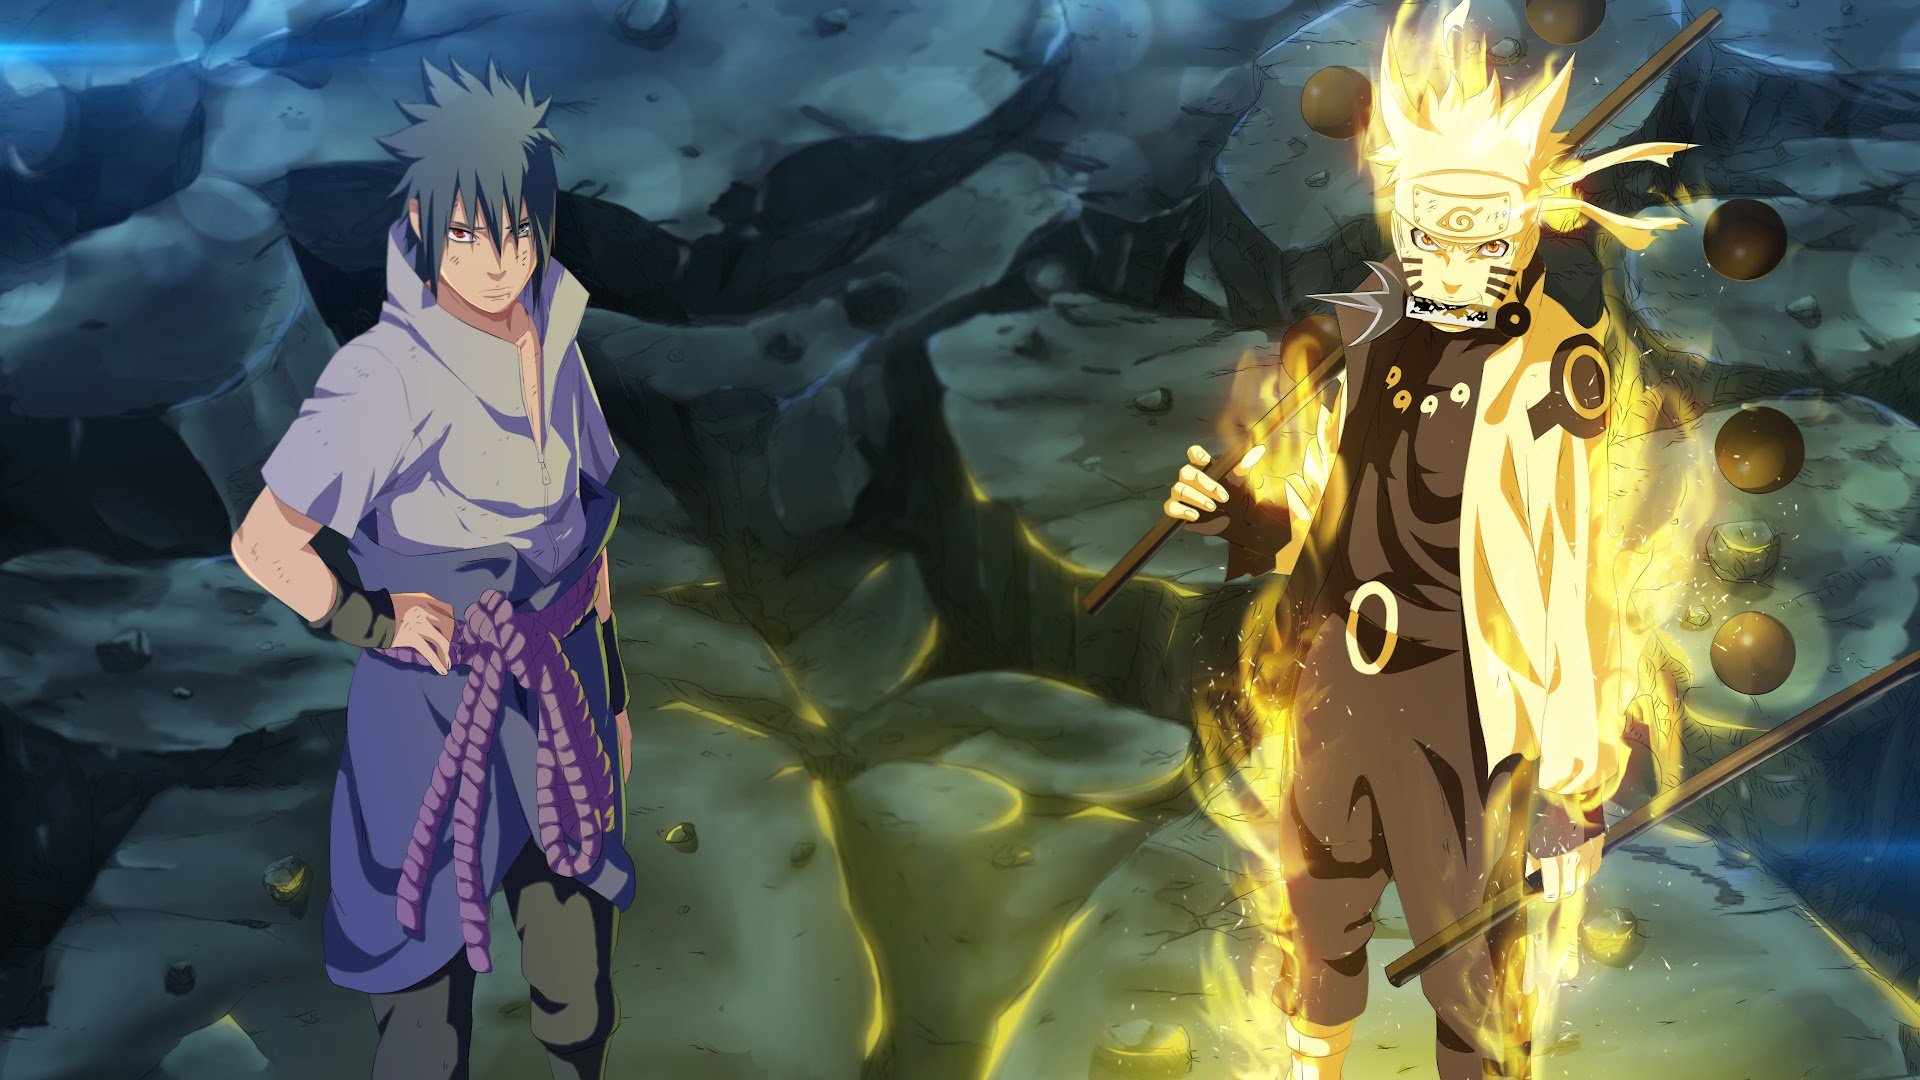 Bạn là người yêu thích Naruto? Cùng xem những bức ảnh nền tuyệt đẹp về Naruto để thỏa mãn niềm đam mê nhé!